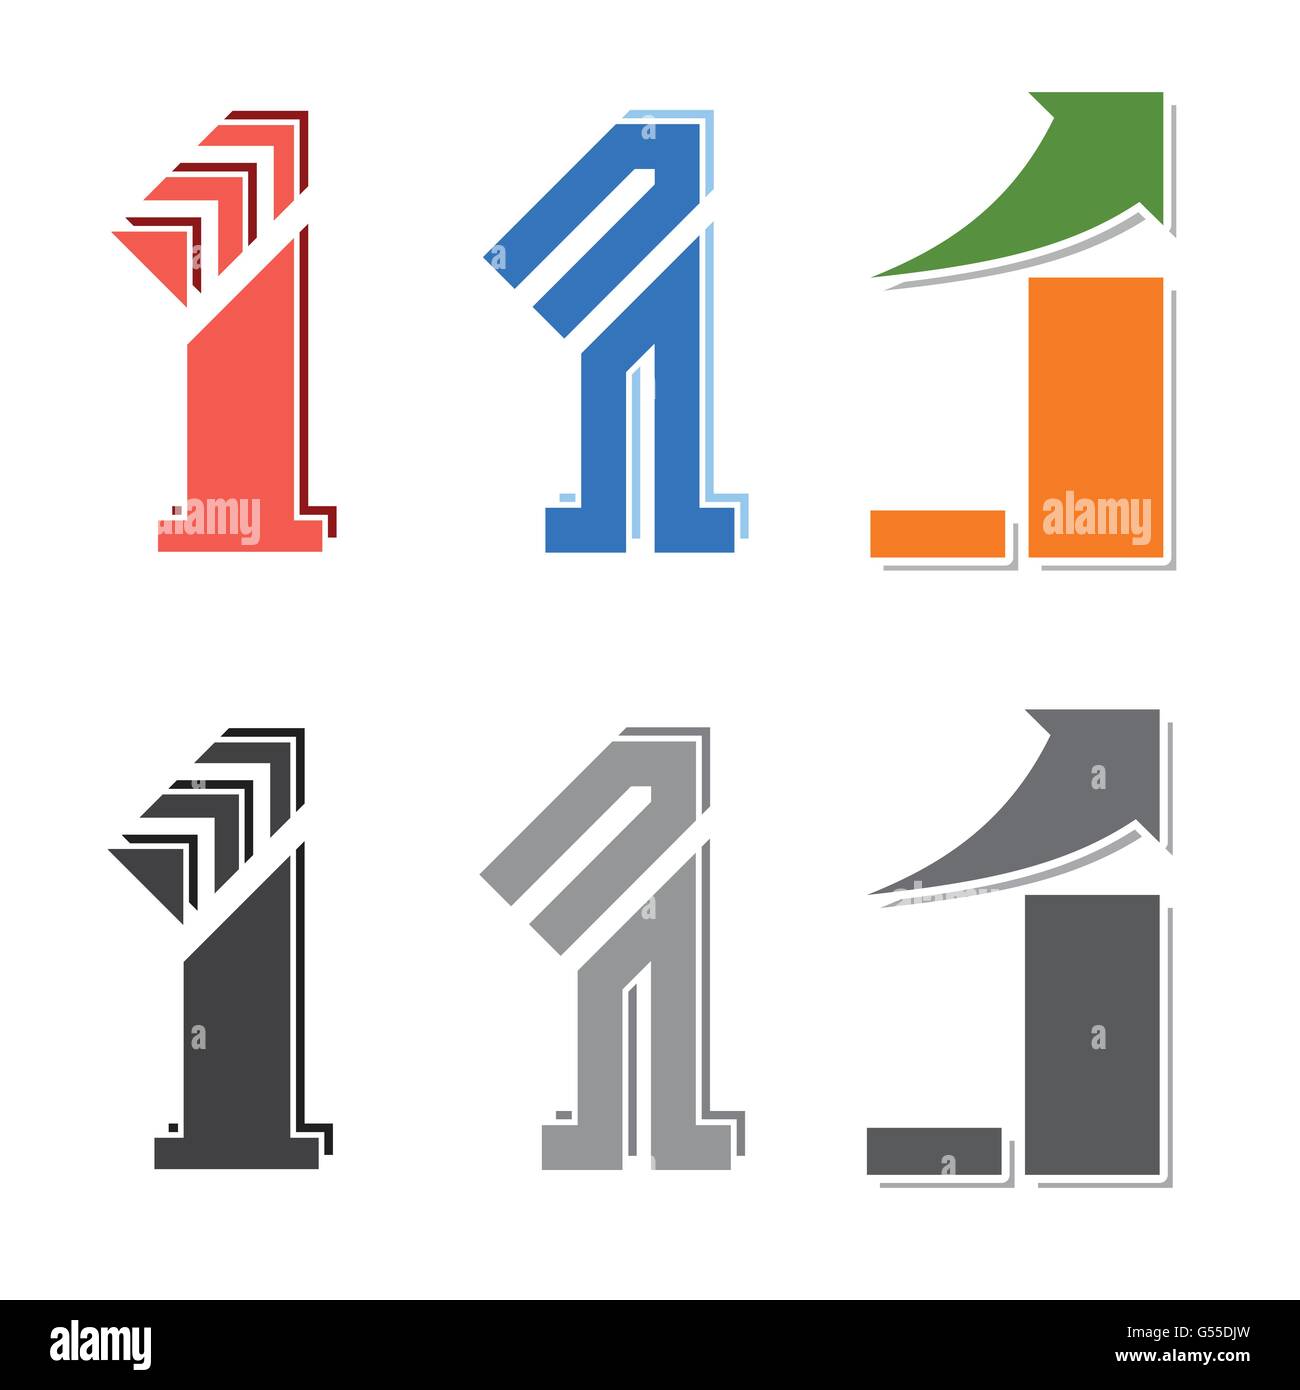 Nummer eins Abbildung kreatives Design mit Pfeil oben Symbol Geschäft wächst Identität Vektor-set Stock Vektor